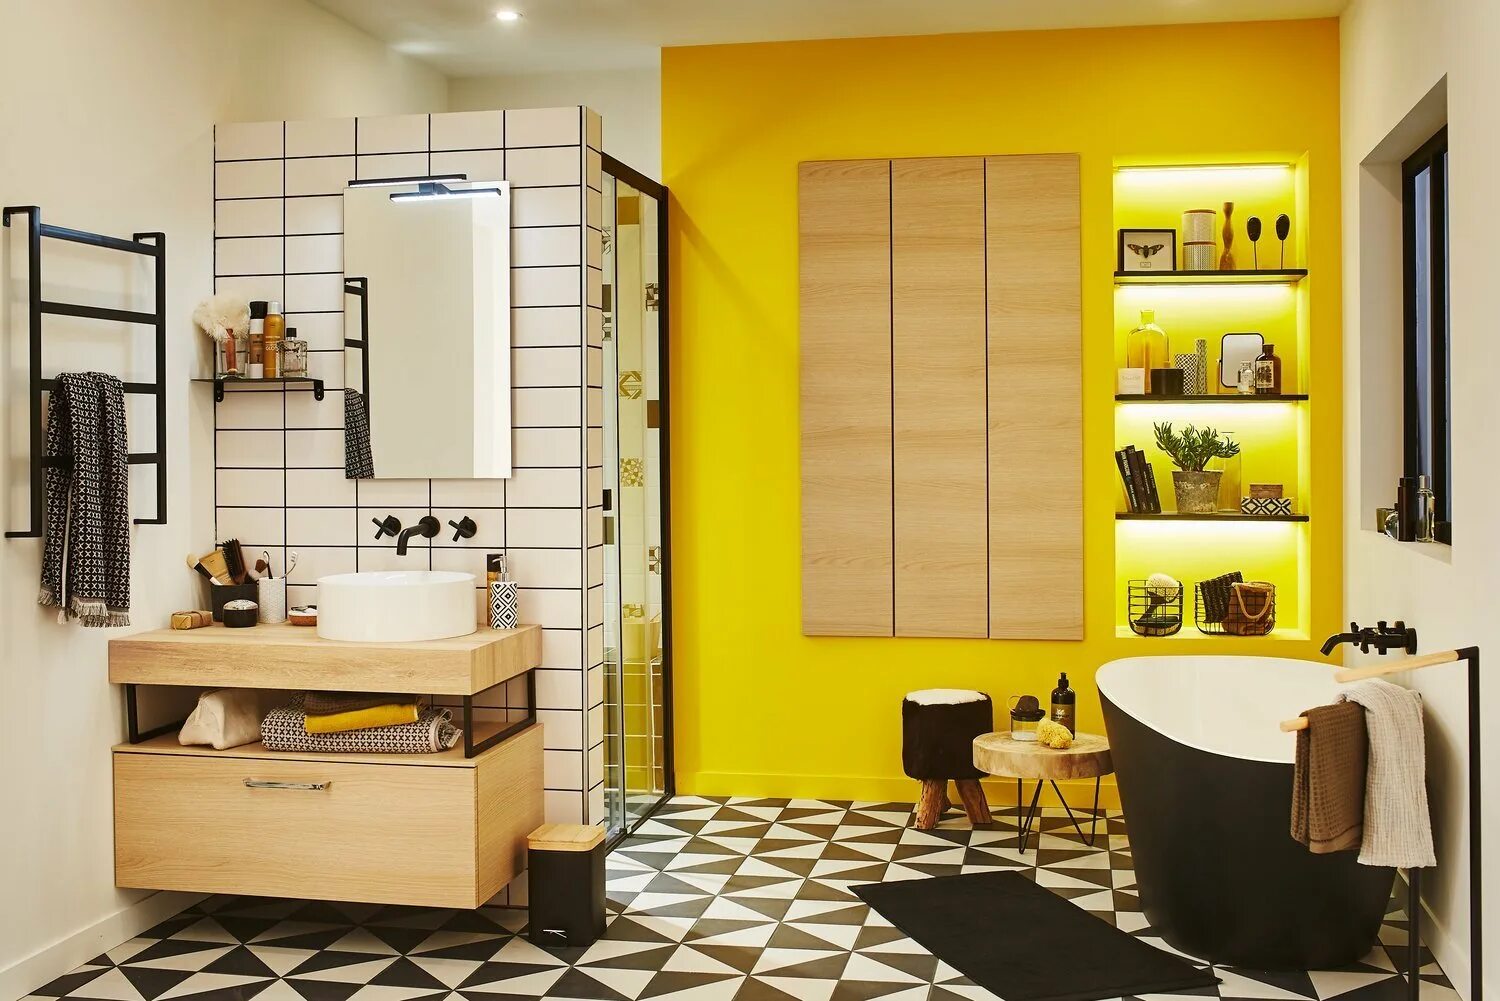 Желтая плитка купить. Плитка желтая Леруа Мерлен. Леруа Мерлен ванная комната. Желтая ванная комната. Желтая плитка для ванной комнаты.